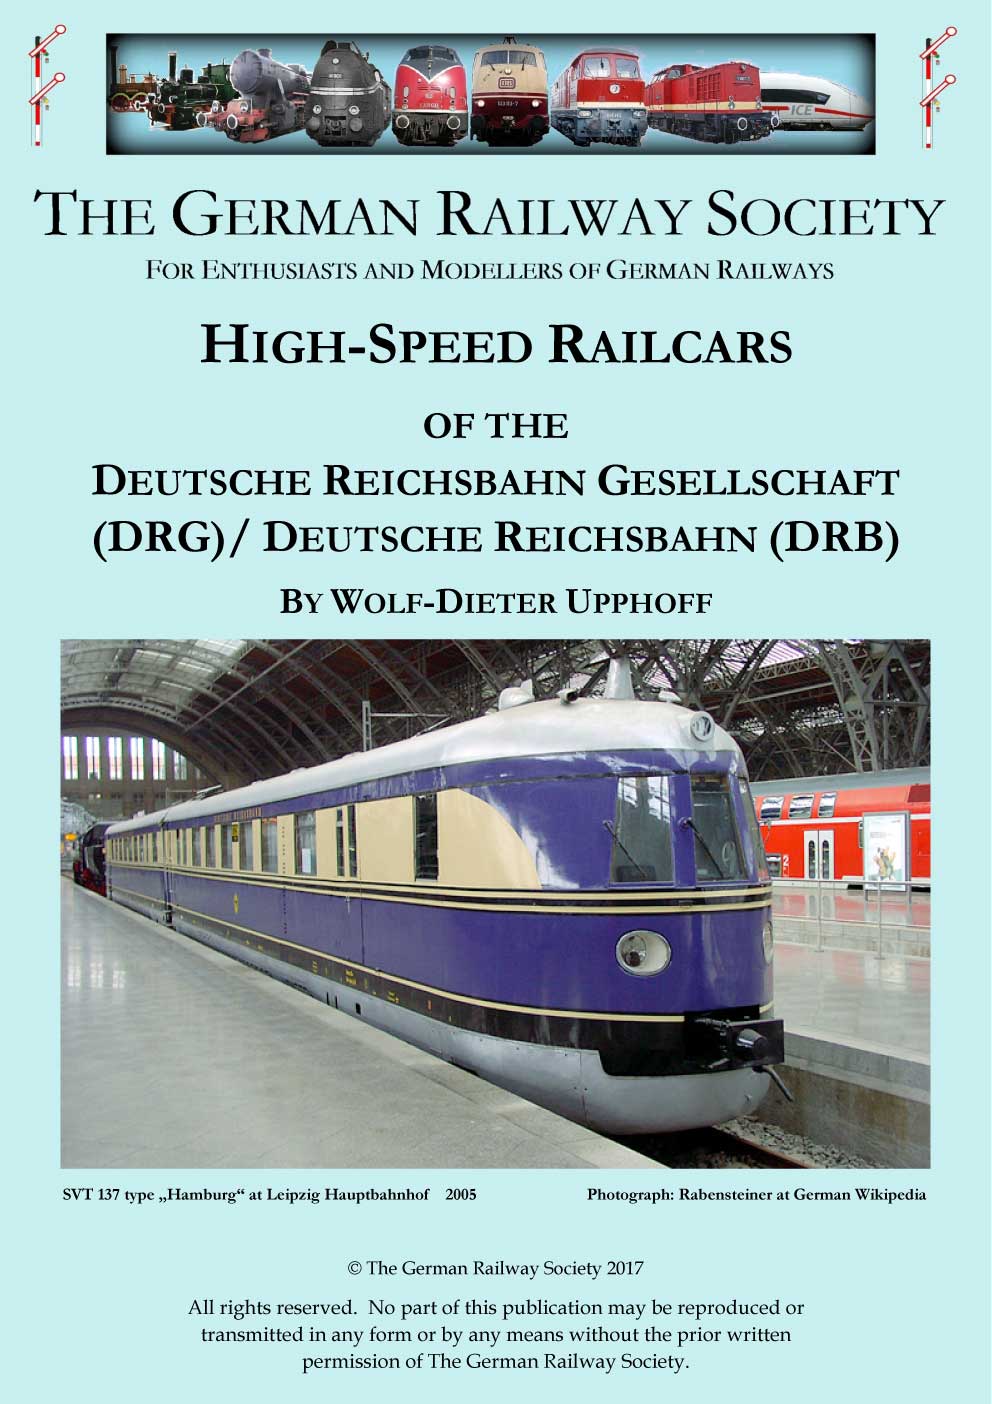 Cover image: High-speed railcars of the Deutsche Reichsbahn Gesellschaft (DRG)/Deutsche Reichsbahn (DRB)